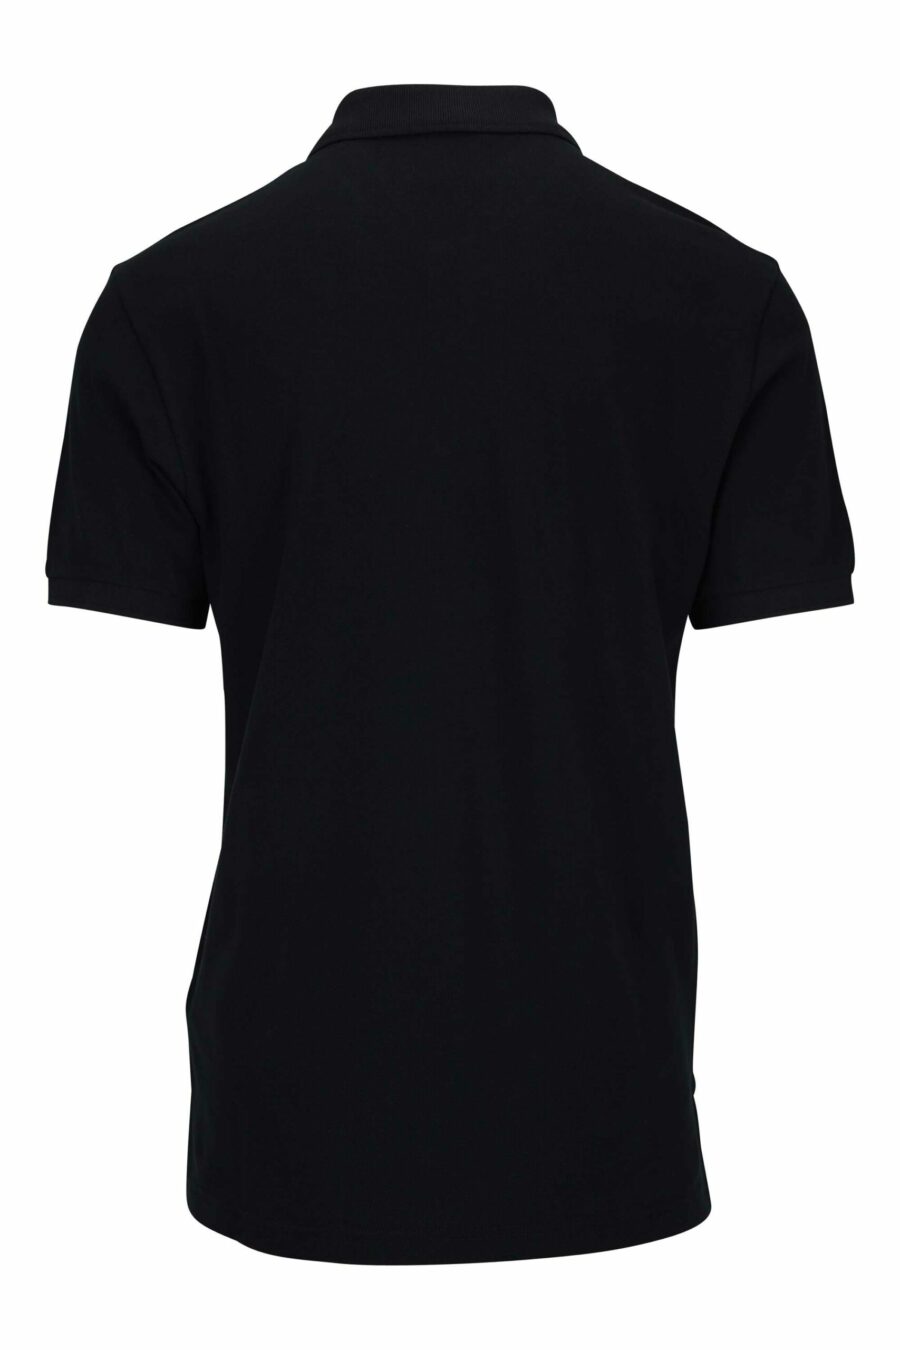 Schwarzes Poloshirt mit weißem Mini-Logo-Etikett - 667113402352 1 skaliert